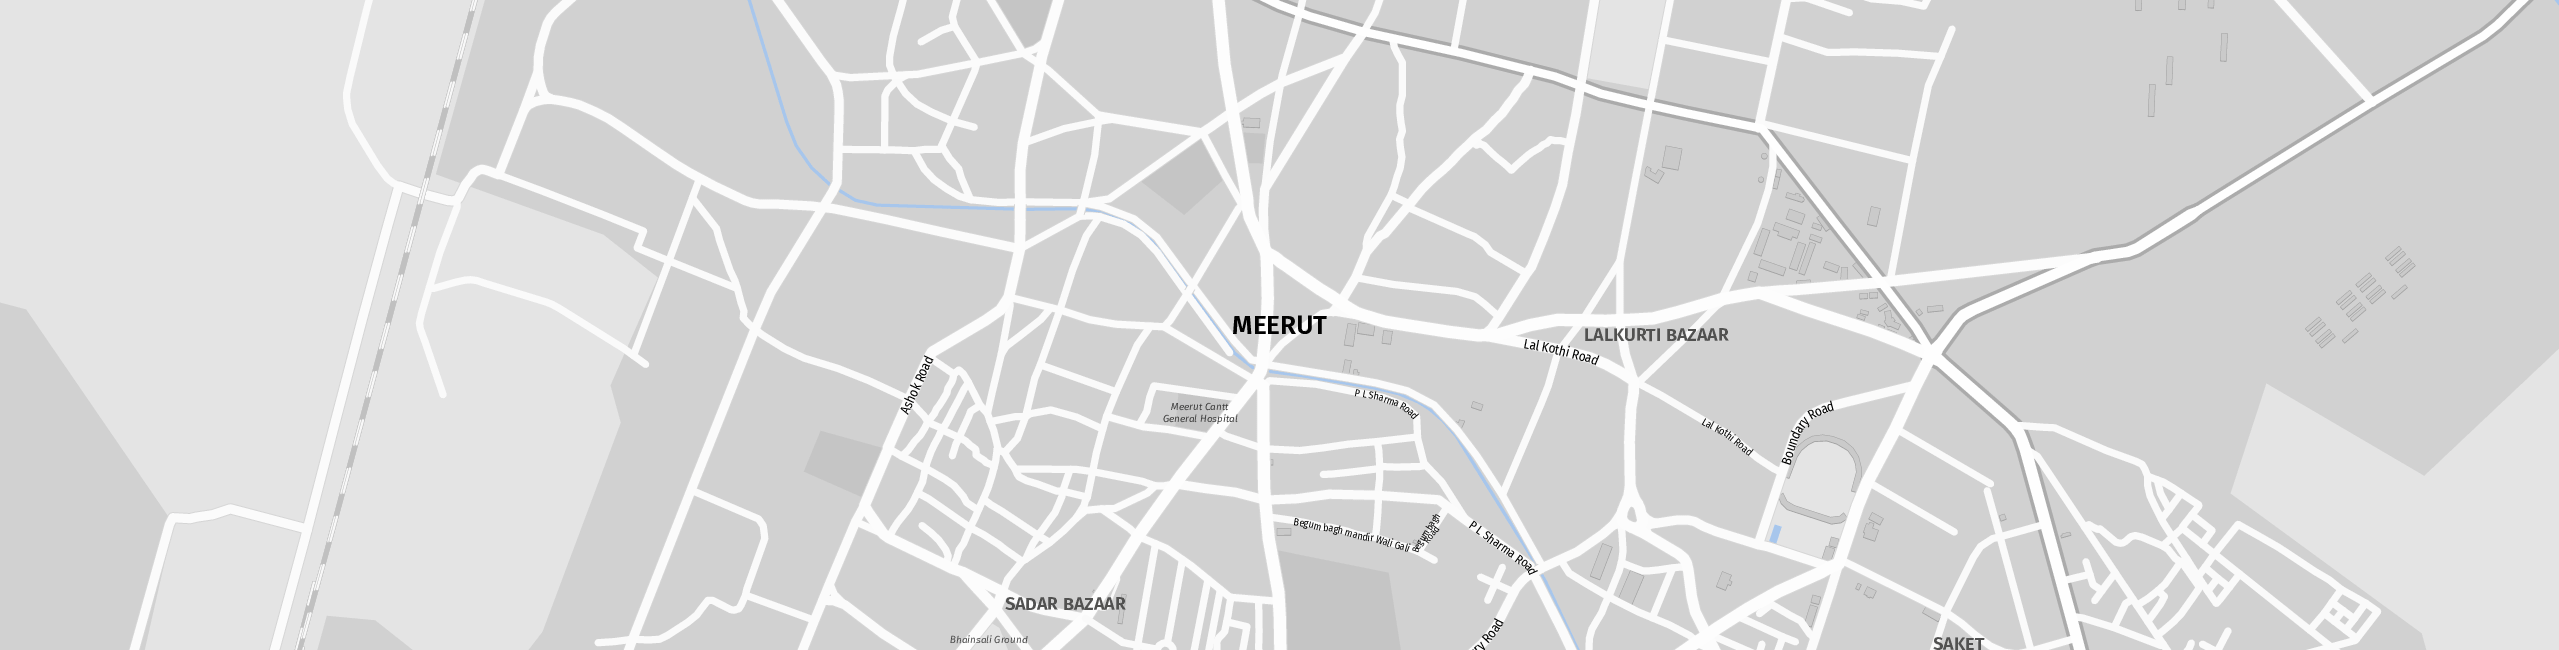 Stadtplan Meerut zum Downloaden.